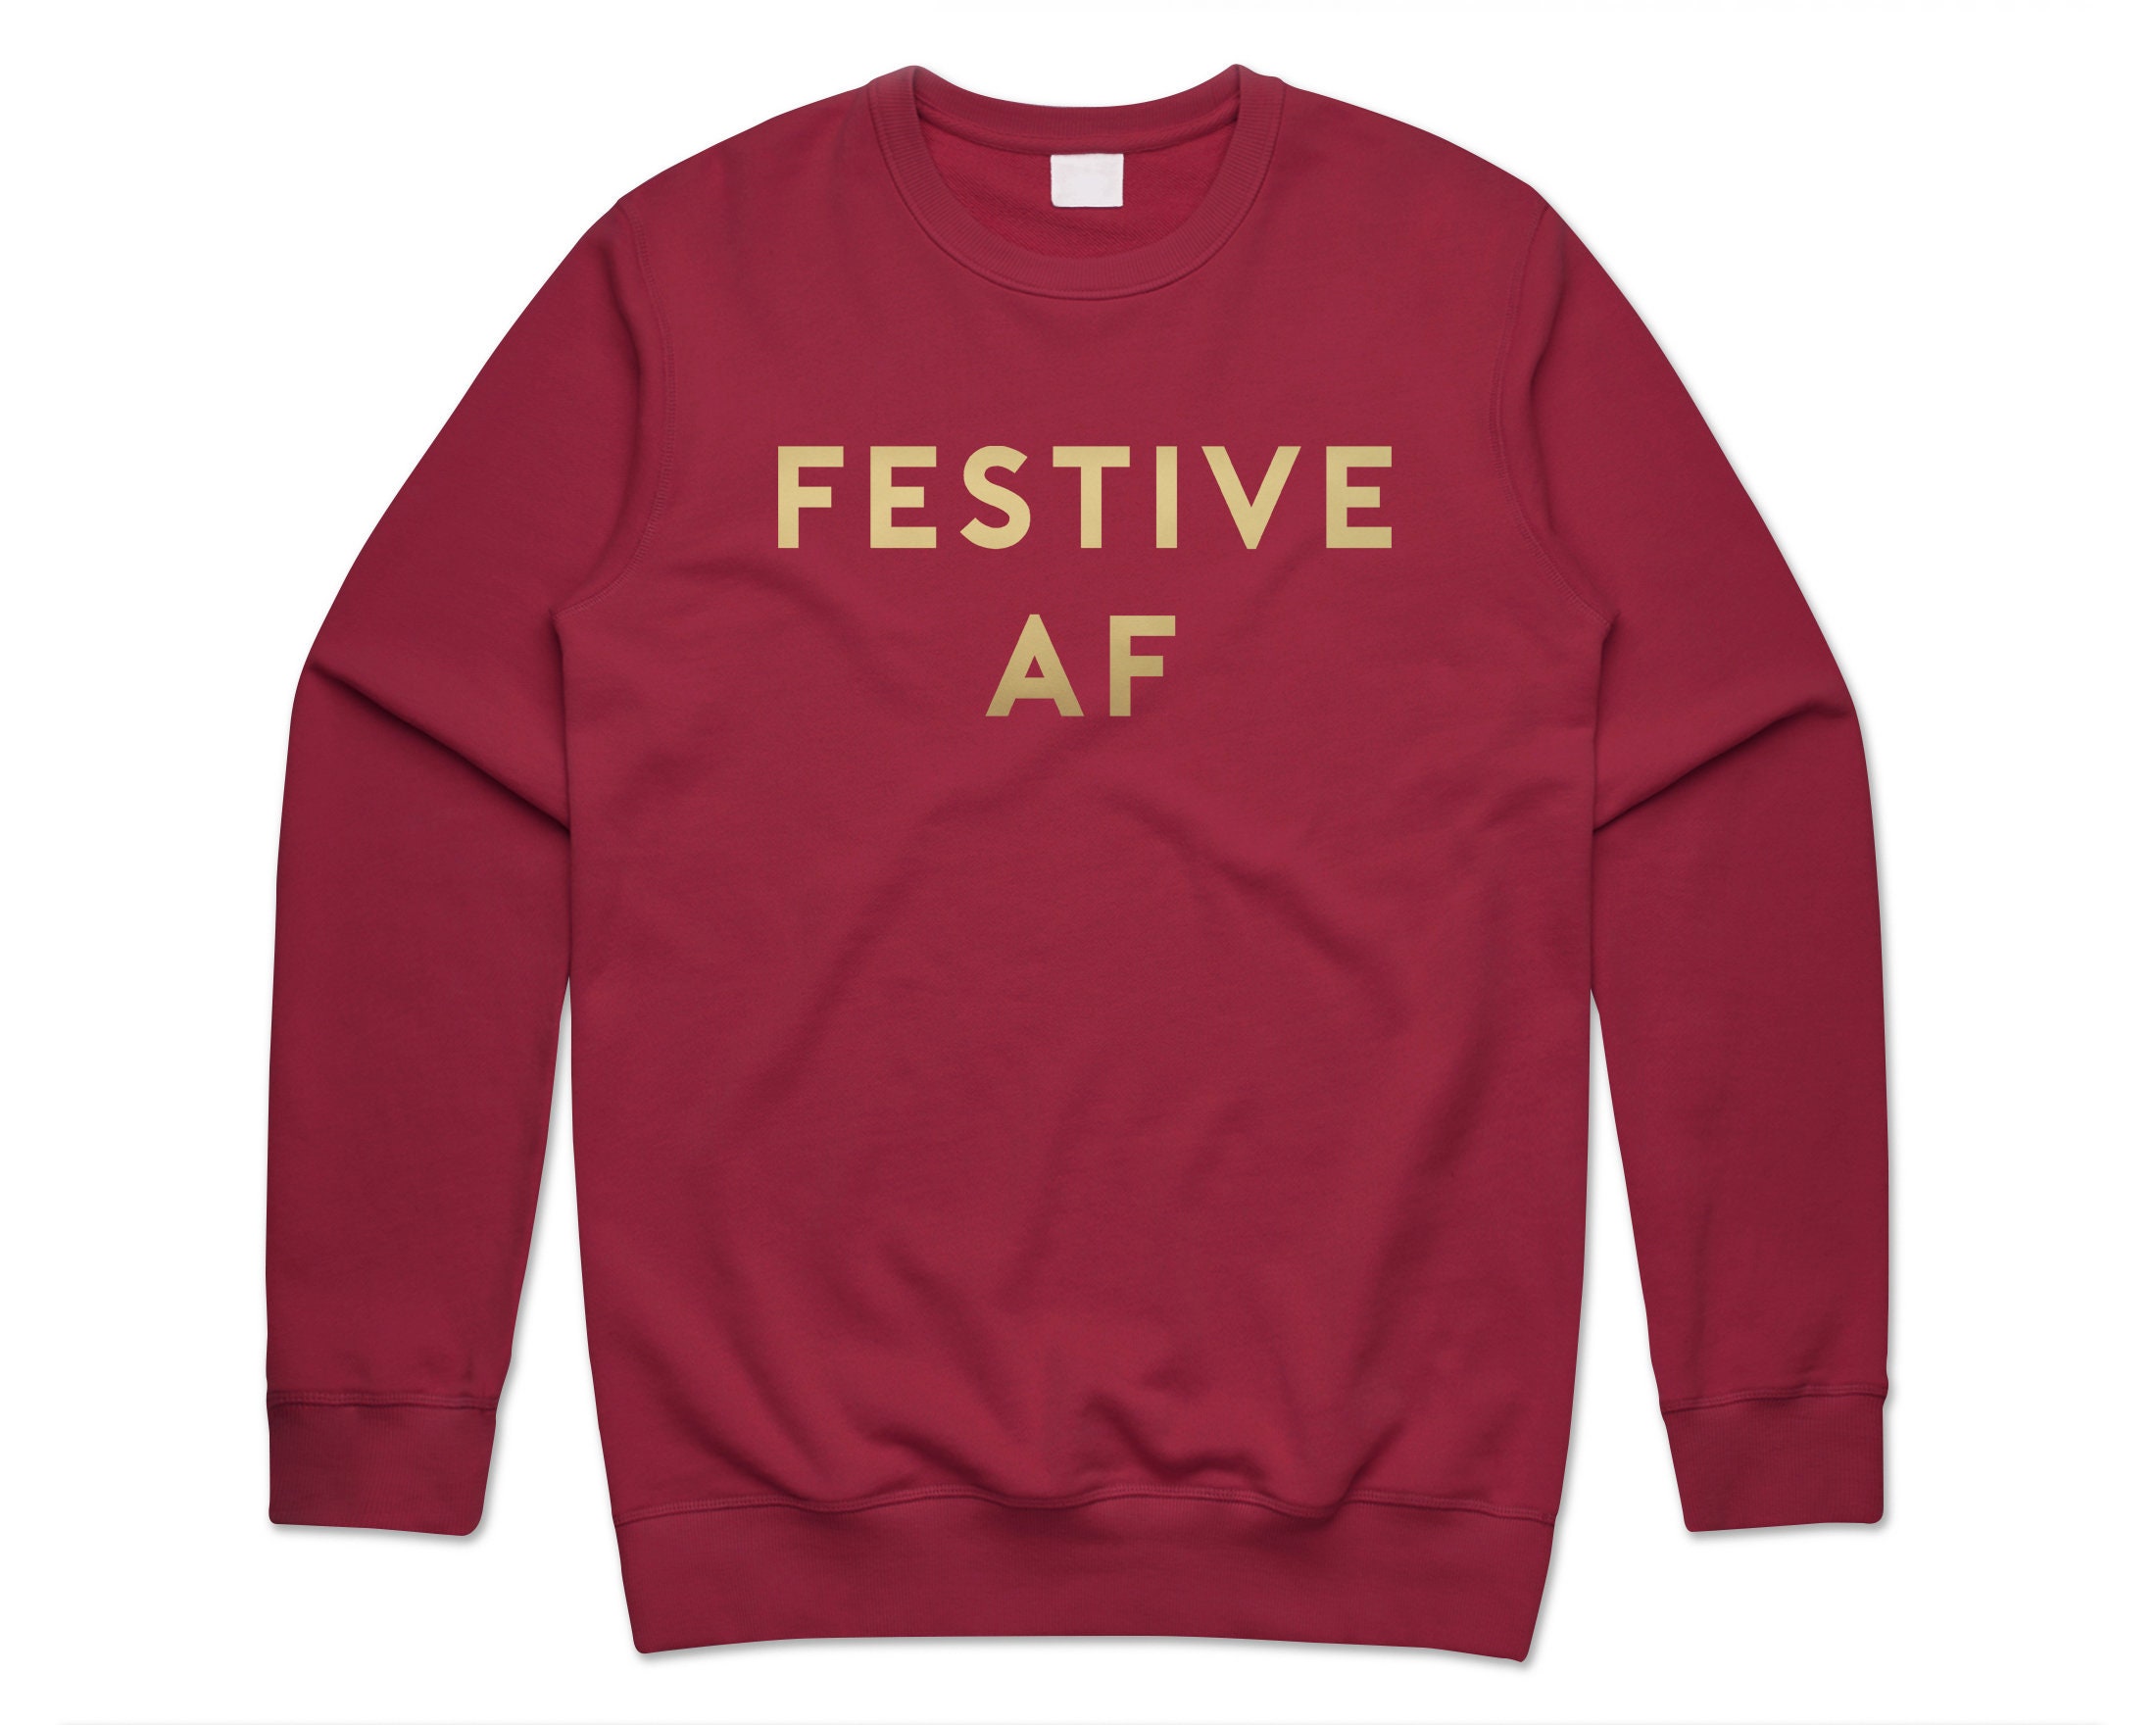 Festive Af Jumper Sweater Sweatshirt Christmas Xmas Funny Sarcastic Slogan Silly